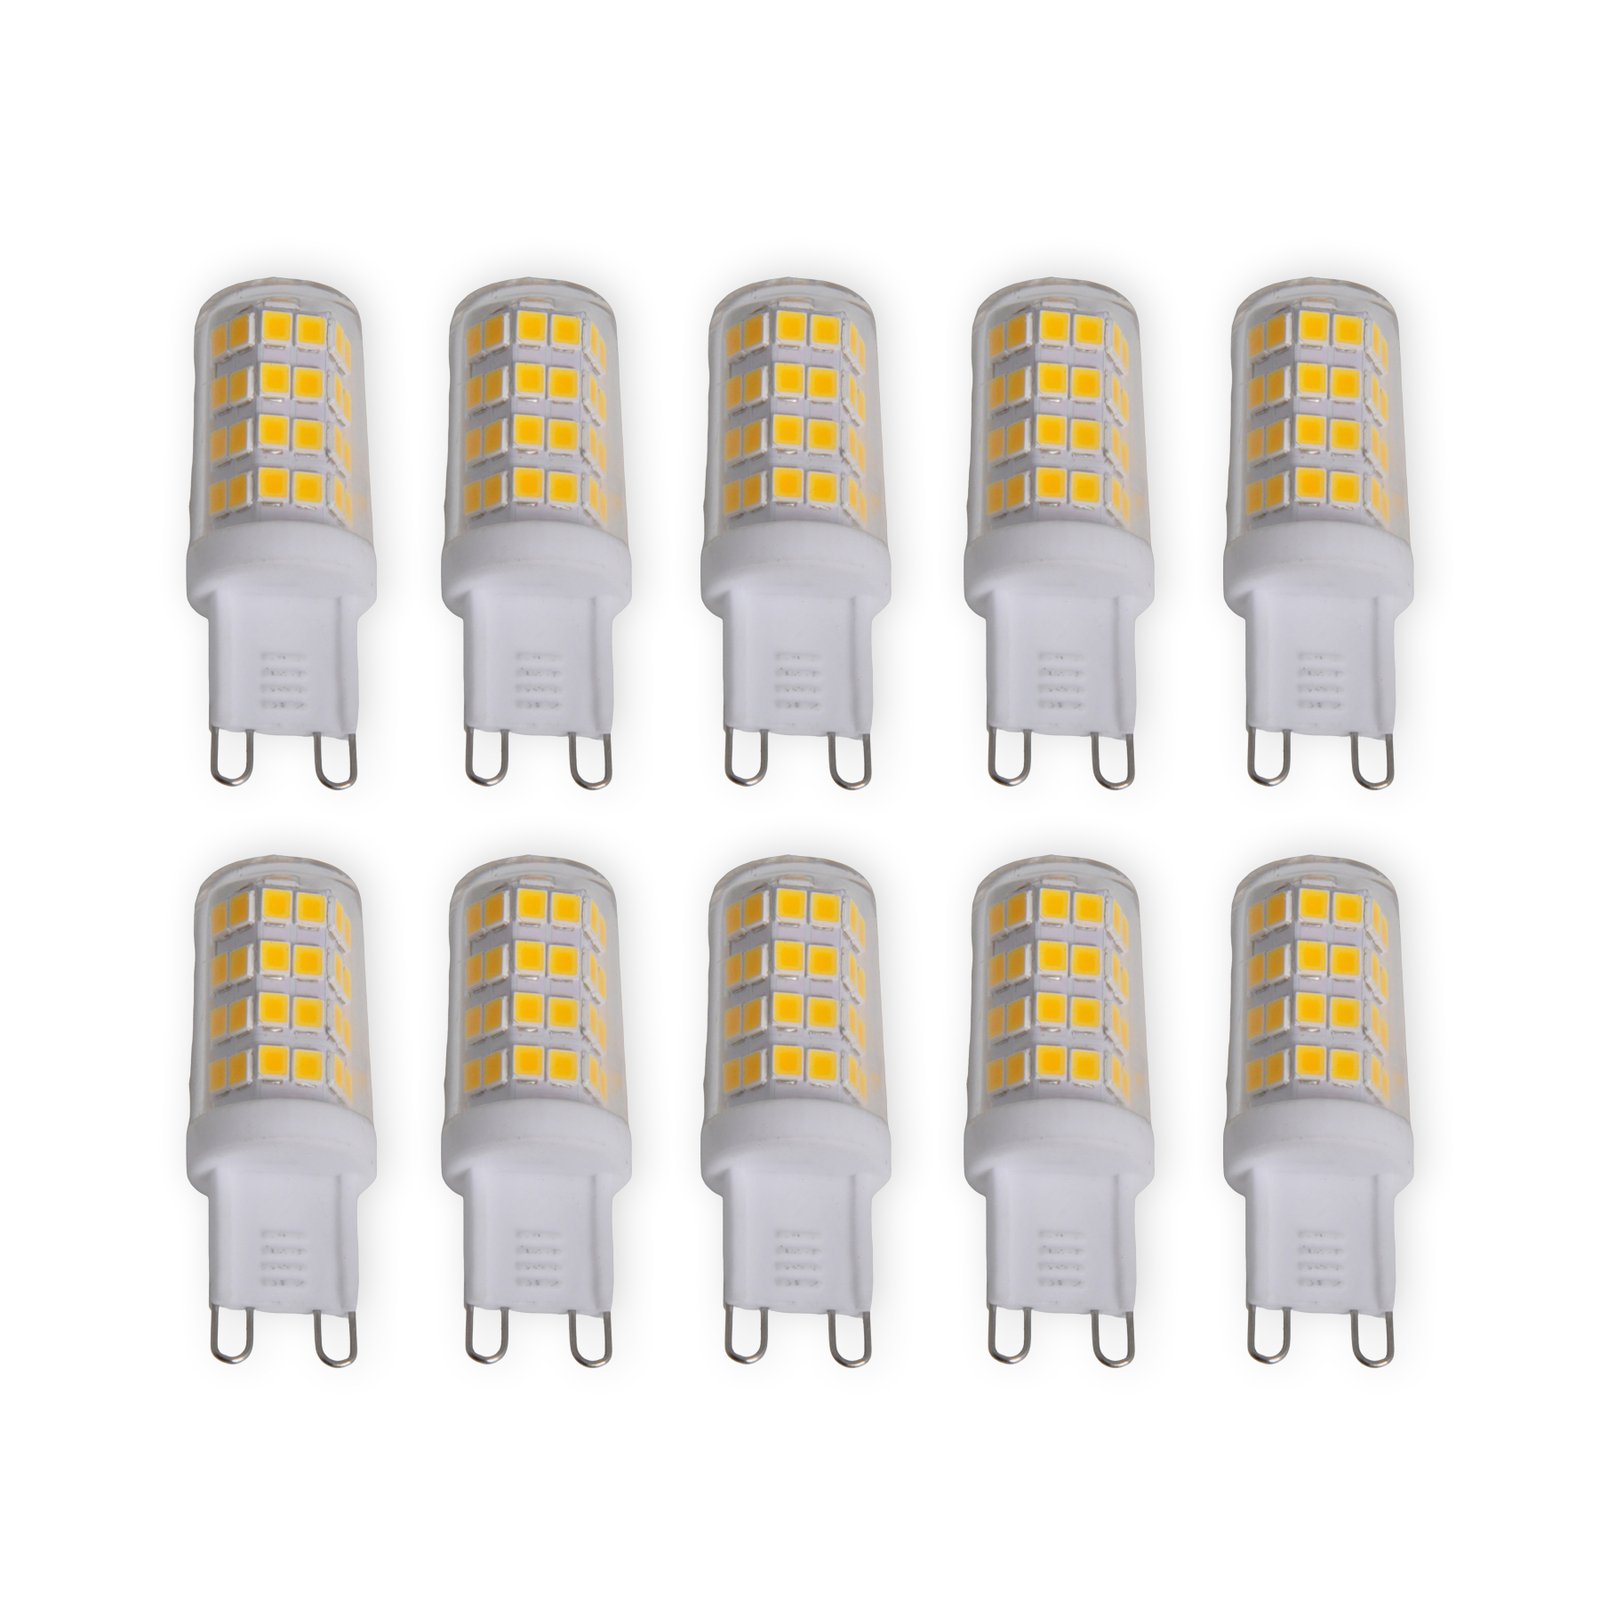 LED-stiftlampa G9 4W, varmvit, 330 lumen, 10-pack